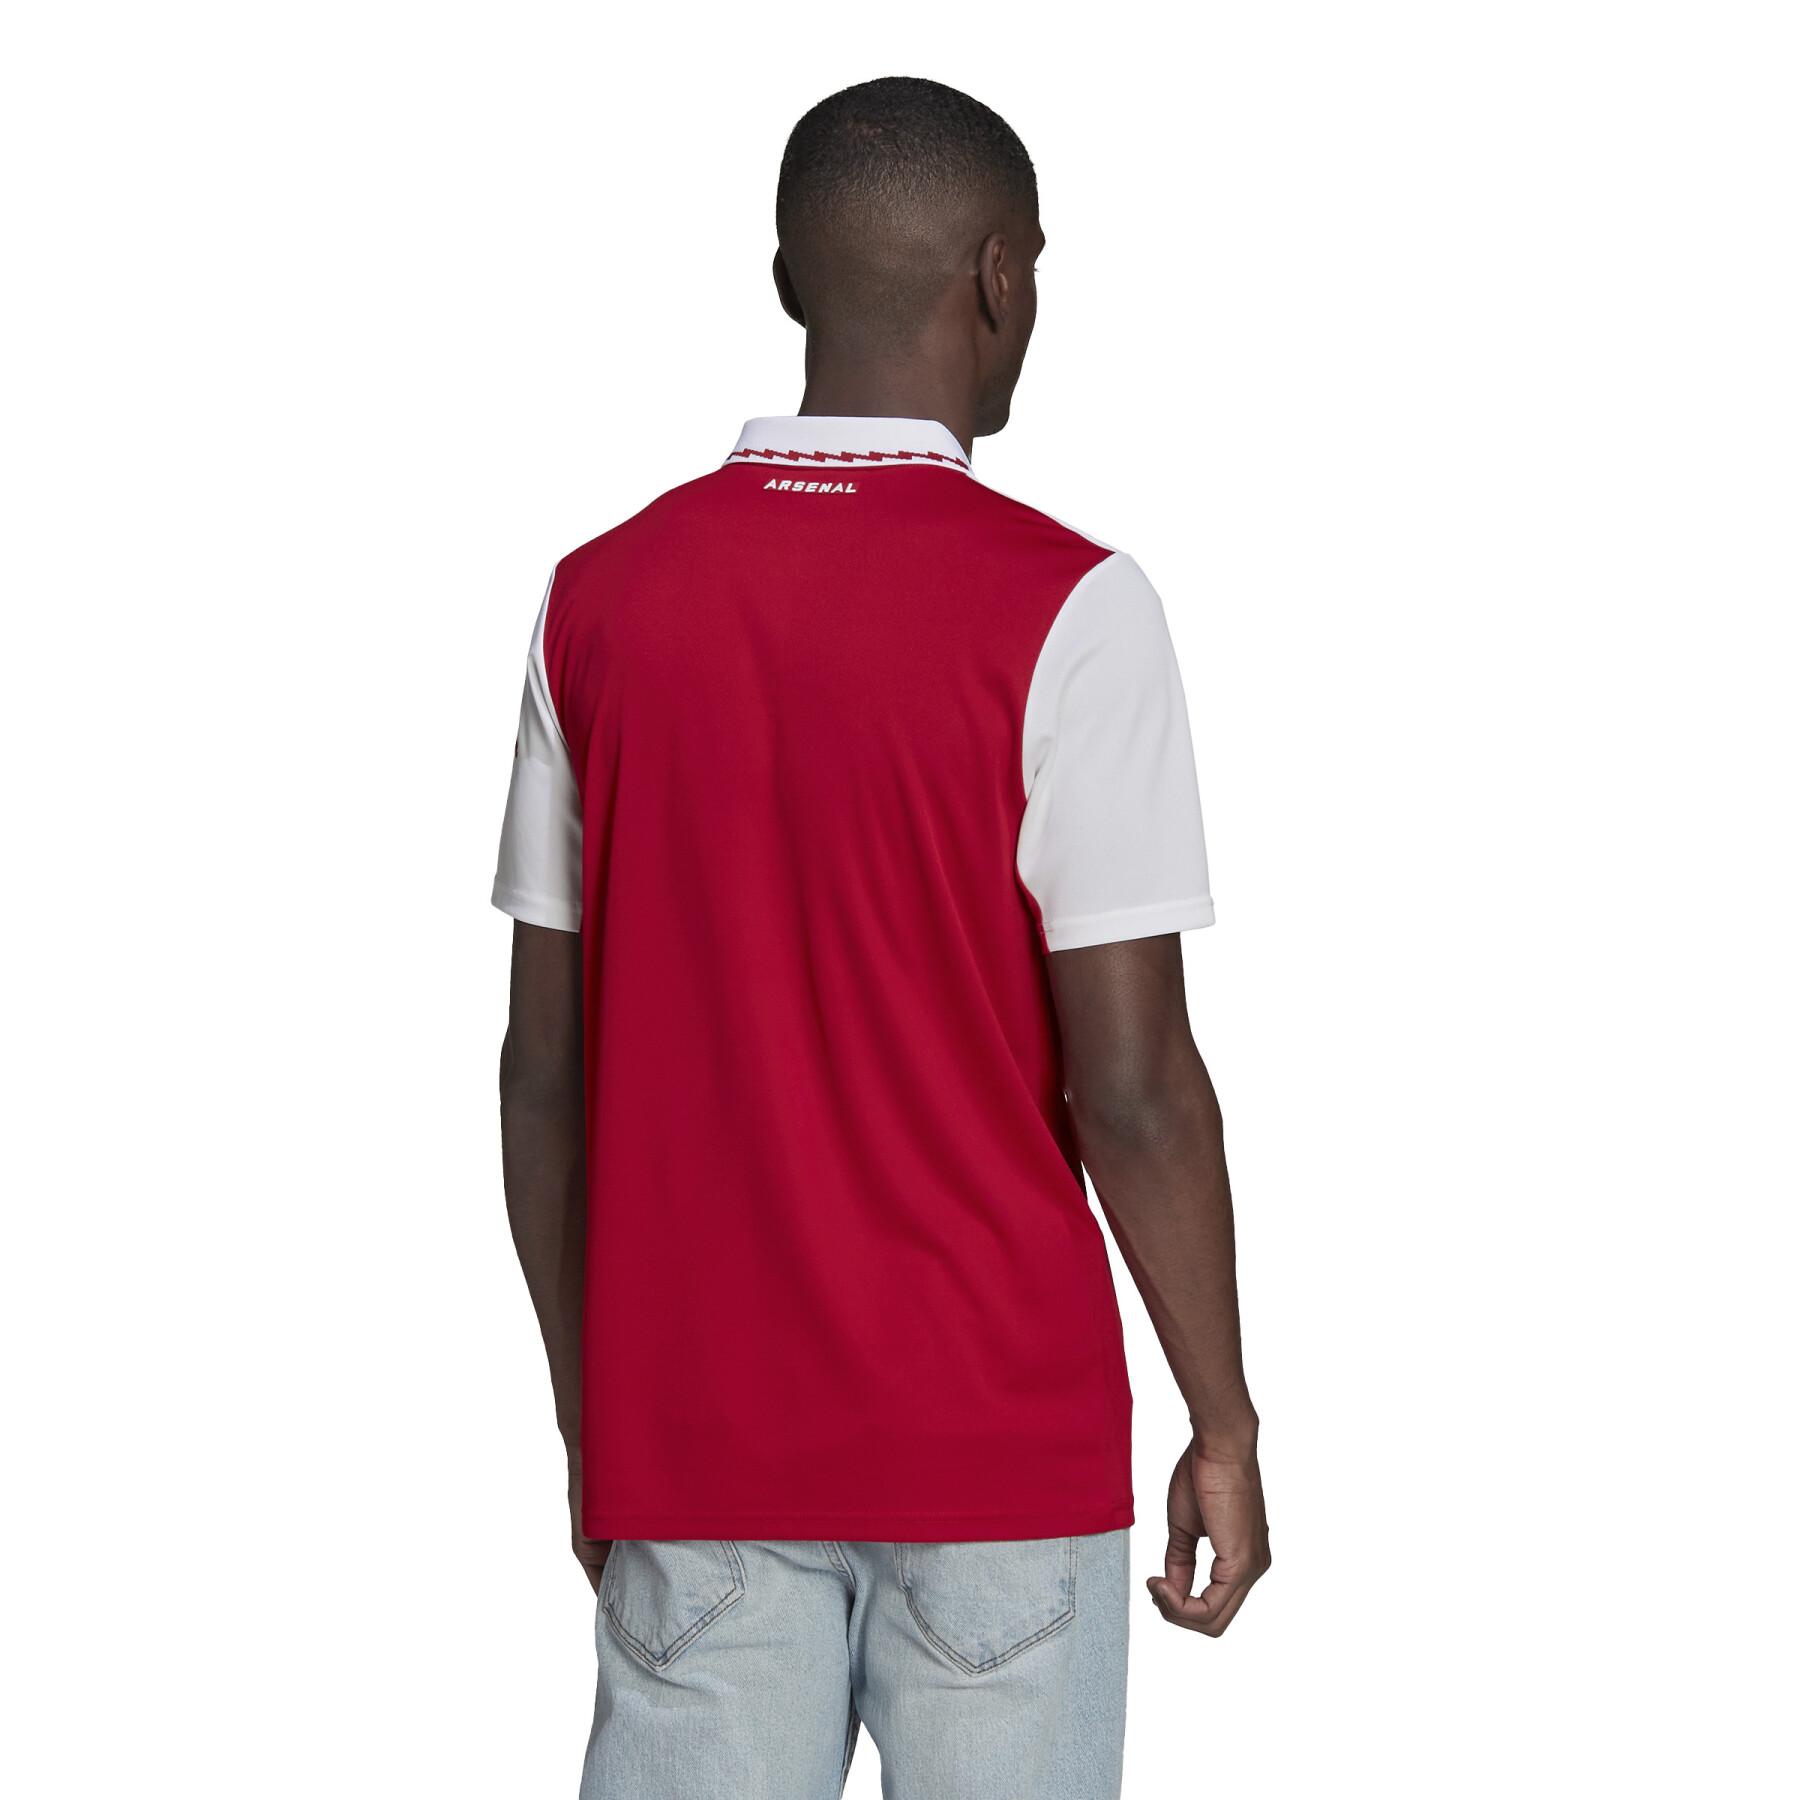 Camiseta primera equipación Arsenal 2022/23